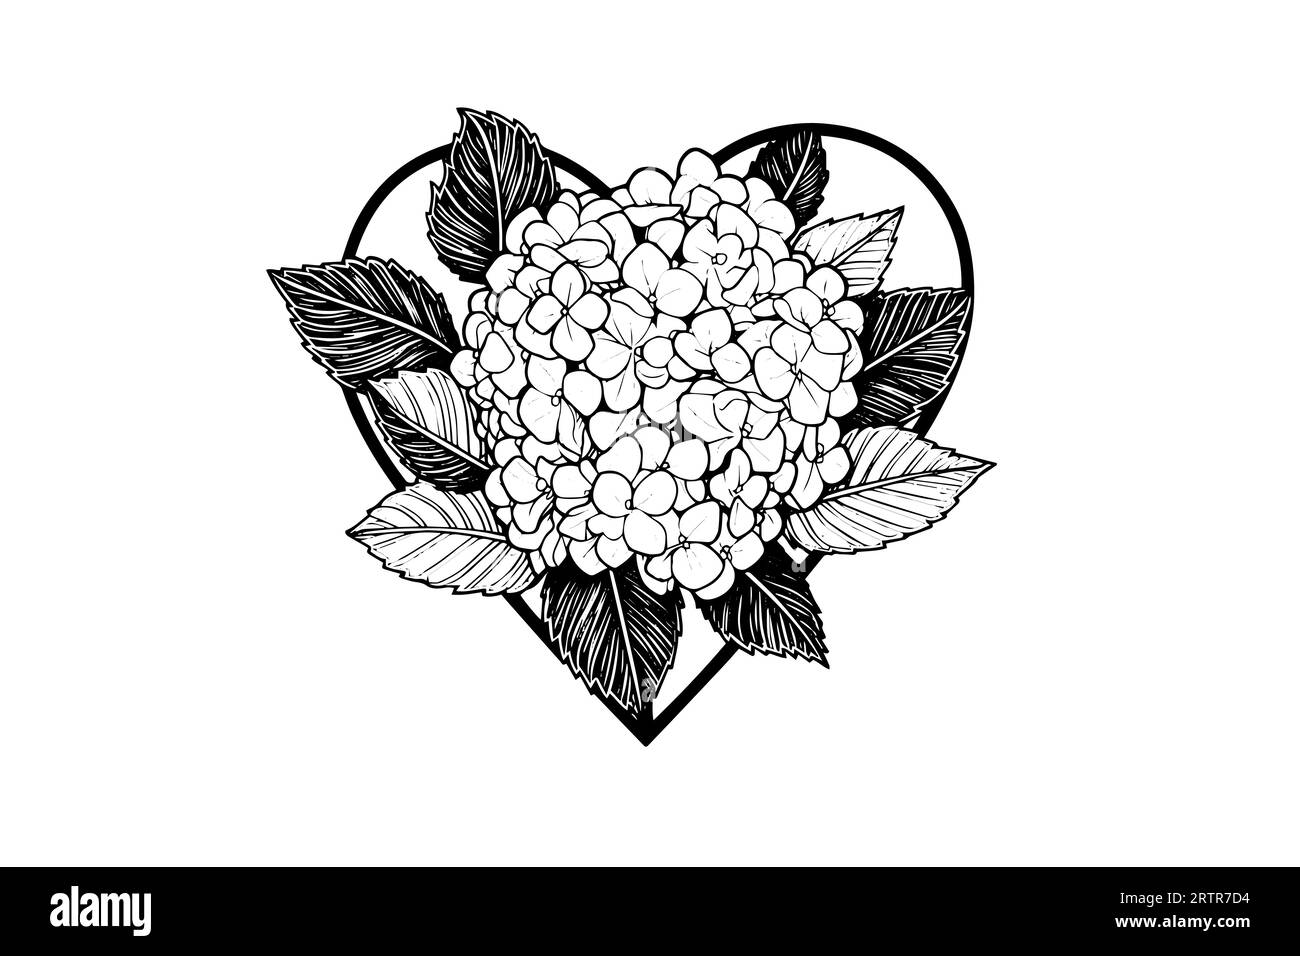 Handgezeichnete Tuschezeichnung herzförmige Hortensienblüten. Vektorillustration im Gravurstil. Stock Vektor